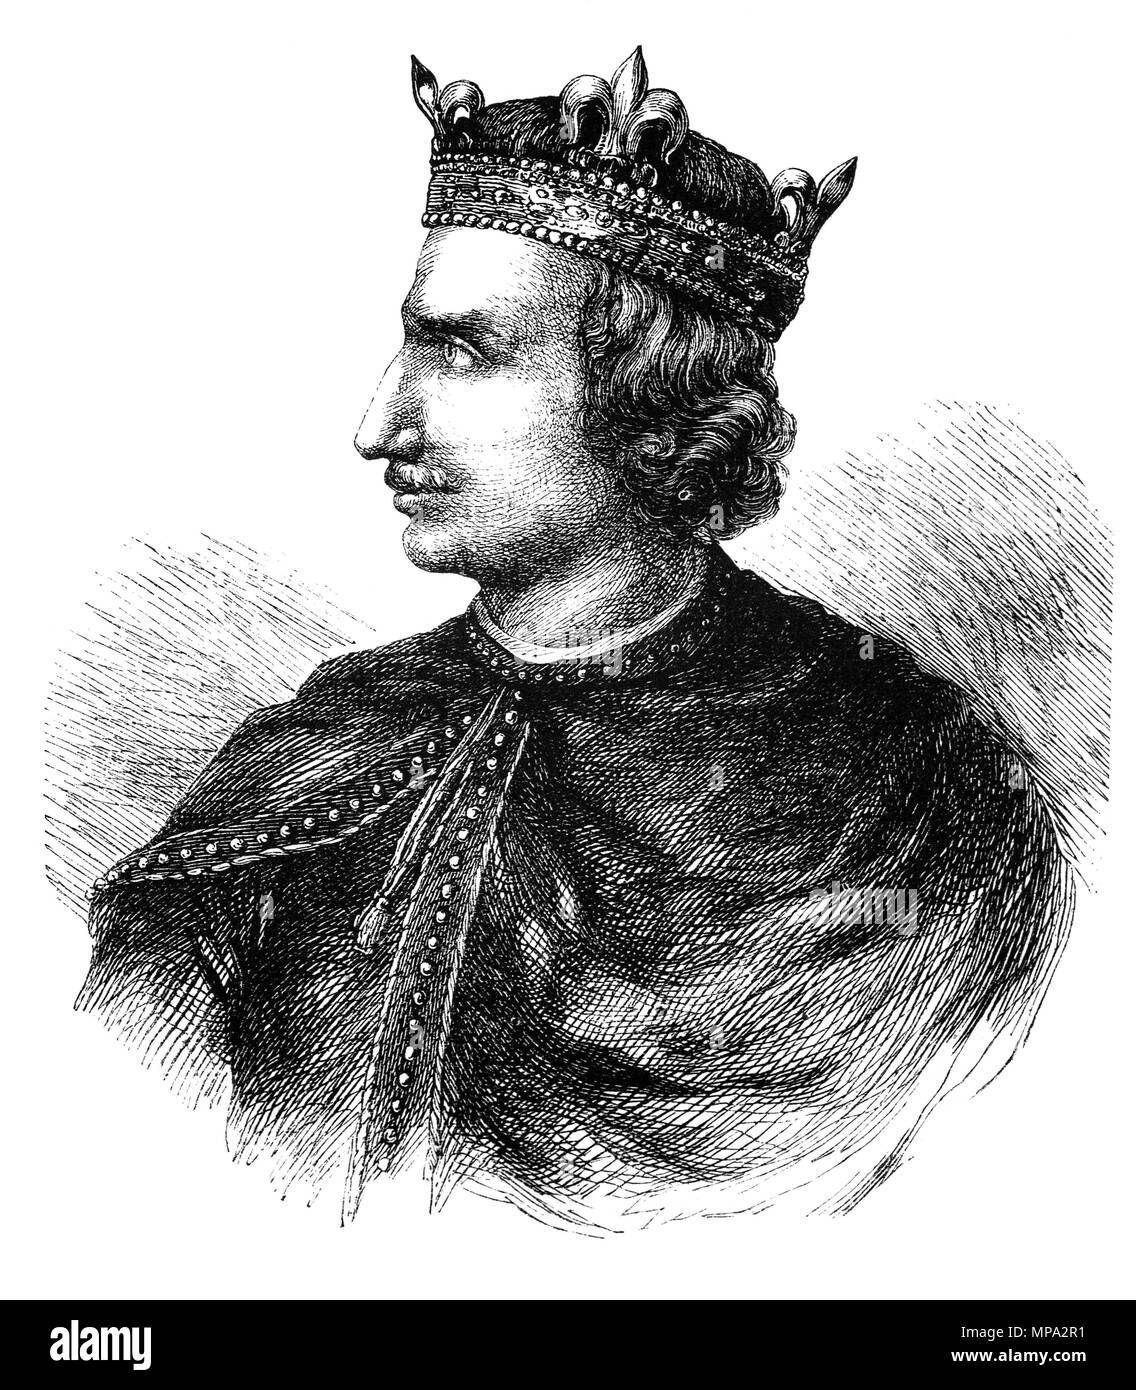 Henry I (1068-1135), fut roi de France de 1100 à sa mort. Il était le quatrième fils de Guillaume le Conquérant et sur la mort de Guillaume en 1087, Henry's frères aînés Robert Curthose et William Rufus a hérité de la Normandie et l'Angleterre, respectivement, mais Henry a été laissé sans terre. Henry reconstruit progressivement sa base de pouvoir dans le Cotentin et allié avec William contre Robert. Henry était présent lorsque William est mort dans un accident de chasse en 1100, et il saisit le trône anglais, promettant à son couronnement de corriger beaucoup de William's moins politiques populaires. Banque D'Images